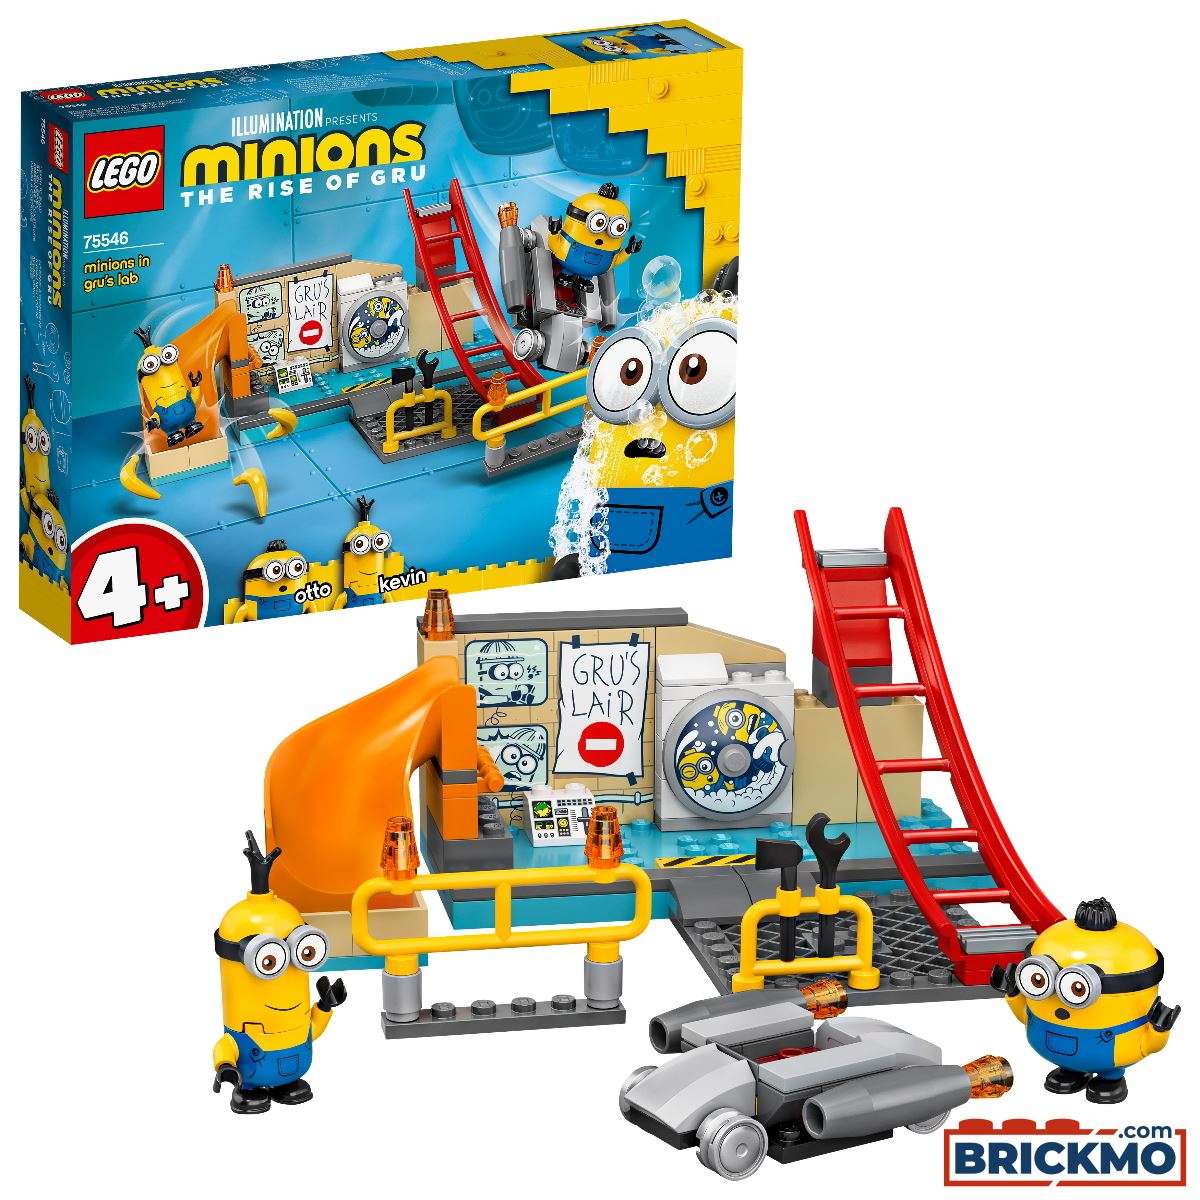 LEGO Minions 75546 Minions in Grus Labor 75546